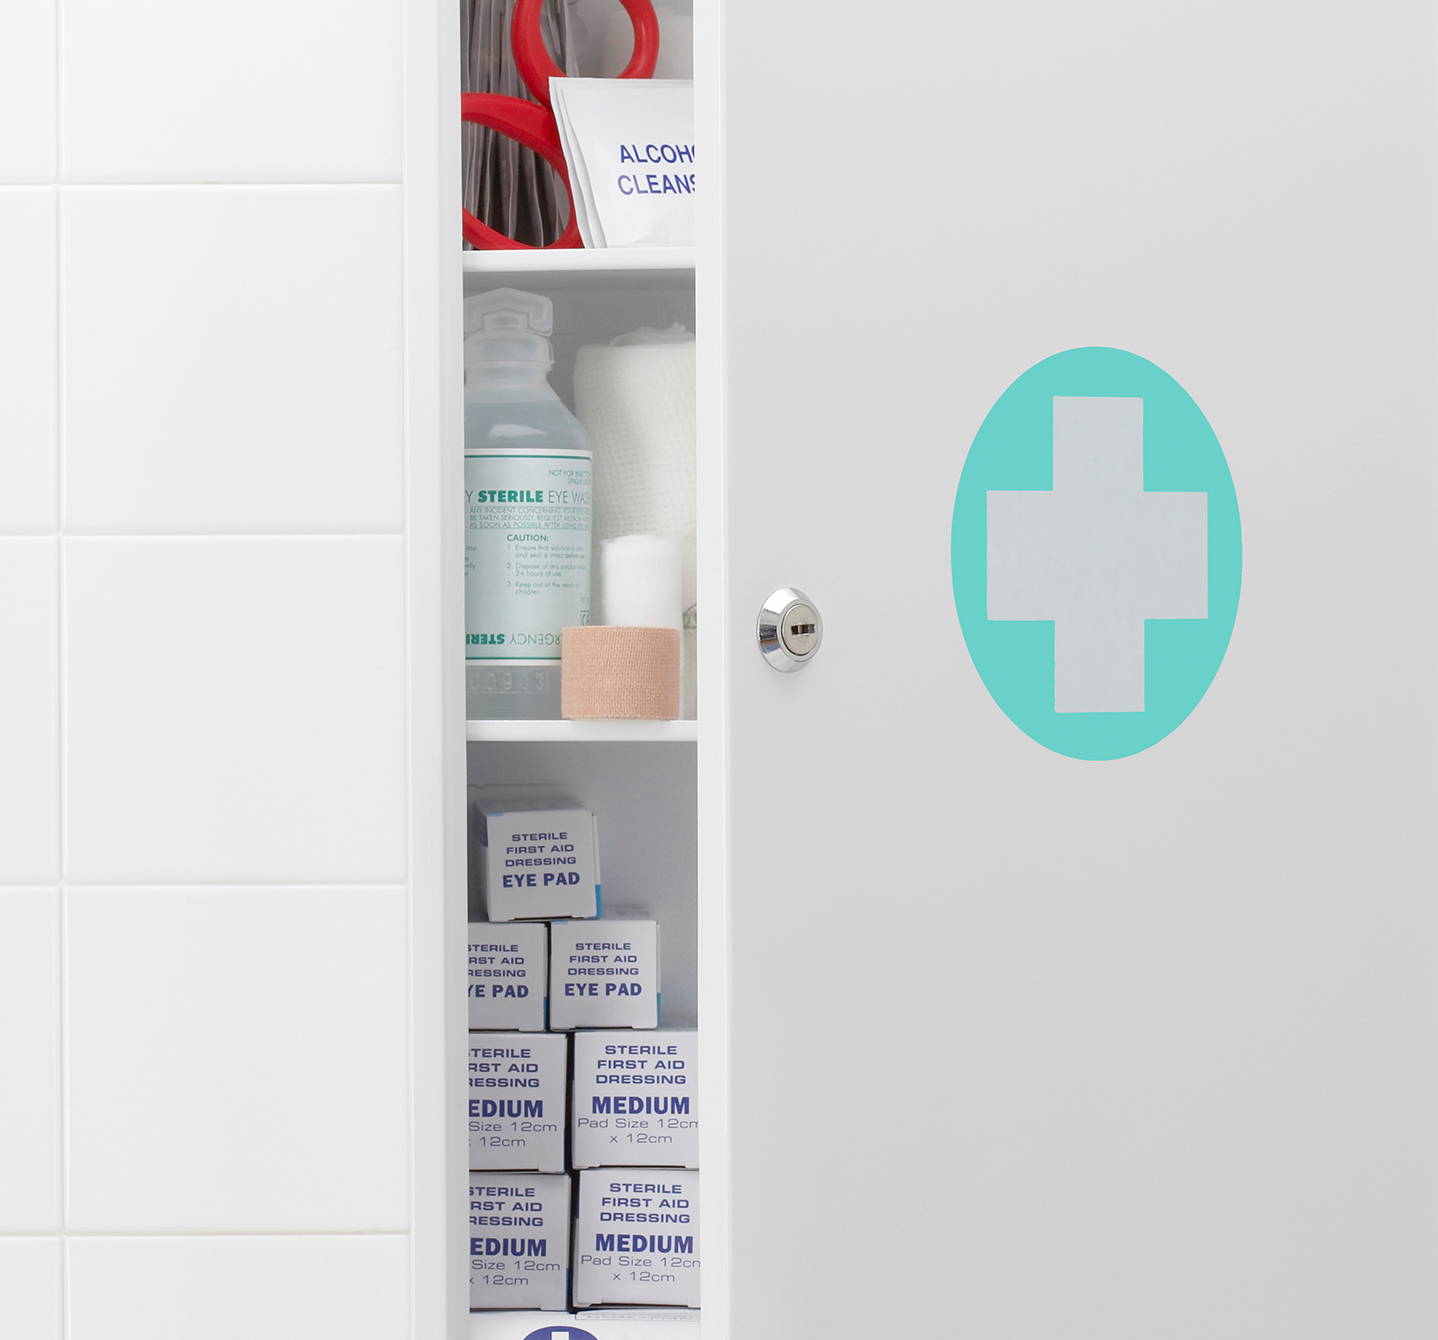 Badezimmerschrank mit weissem Kreuz auf einem mintgrünen Kreis auf halb offener Tür, in dem dein Allergiemedikament stehen könnte.